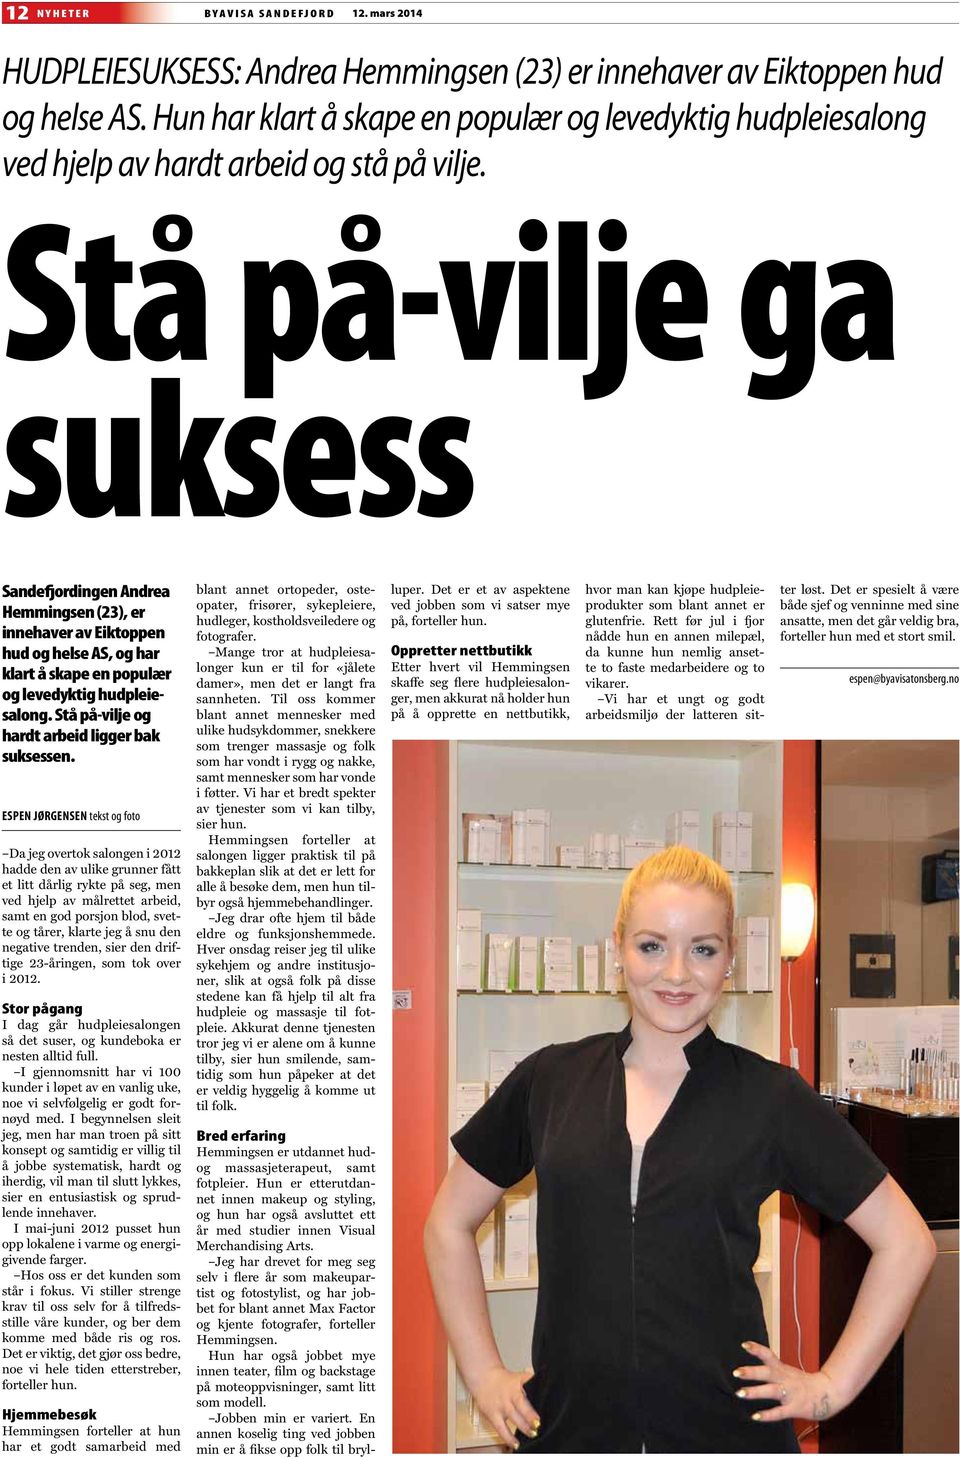 Stå på-vilje ga suksess Sandefjordingen Andrea Hemmingsen (23), er innehaver av Eiktoppen hud og helse AS, og har klart å skape en populær og levedyktig hudpleiesalong.